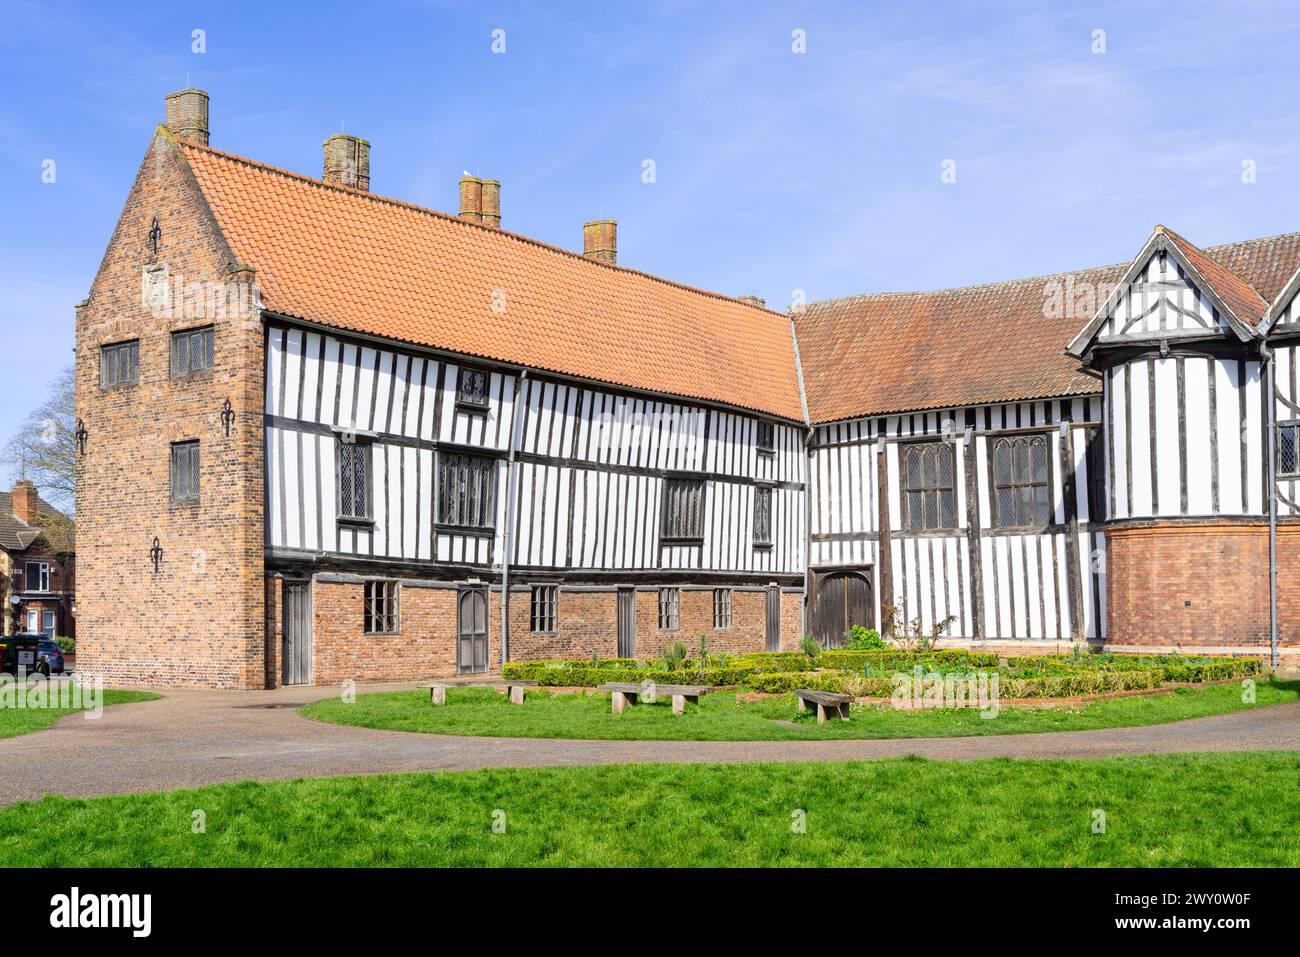 Gainsborough Old Hall manoir médiéval extérieur Gainsborough Lincolnshire Angleterre Royaume-Uni GB Europe Banque D'Images